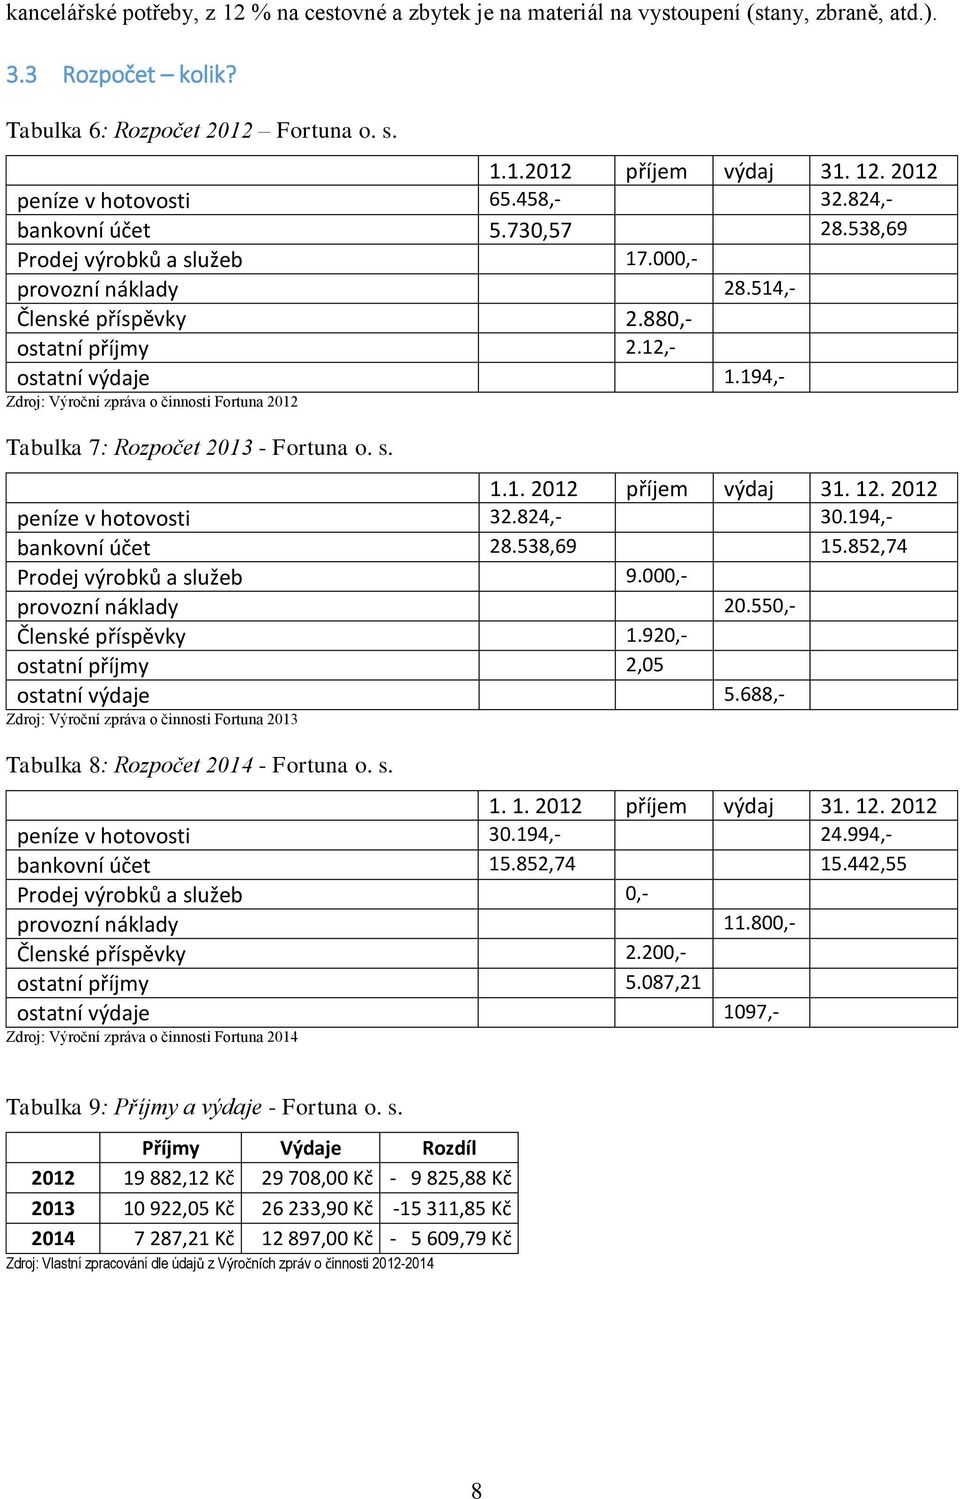 194,- Zdroj: Výroční zpráva o činnosti Fortuna 2012 Tabulka 7: Rozpočet 2013 - Fortuna o. s. 1.1. 2012 příjem výdaj 31. 12. 2012 peníze v hotovosti 32.824,- 30.194,- bankovní účet 28.538,69 15.